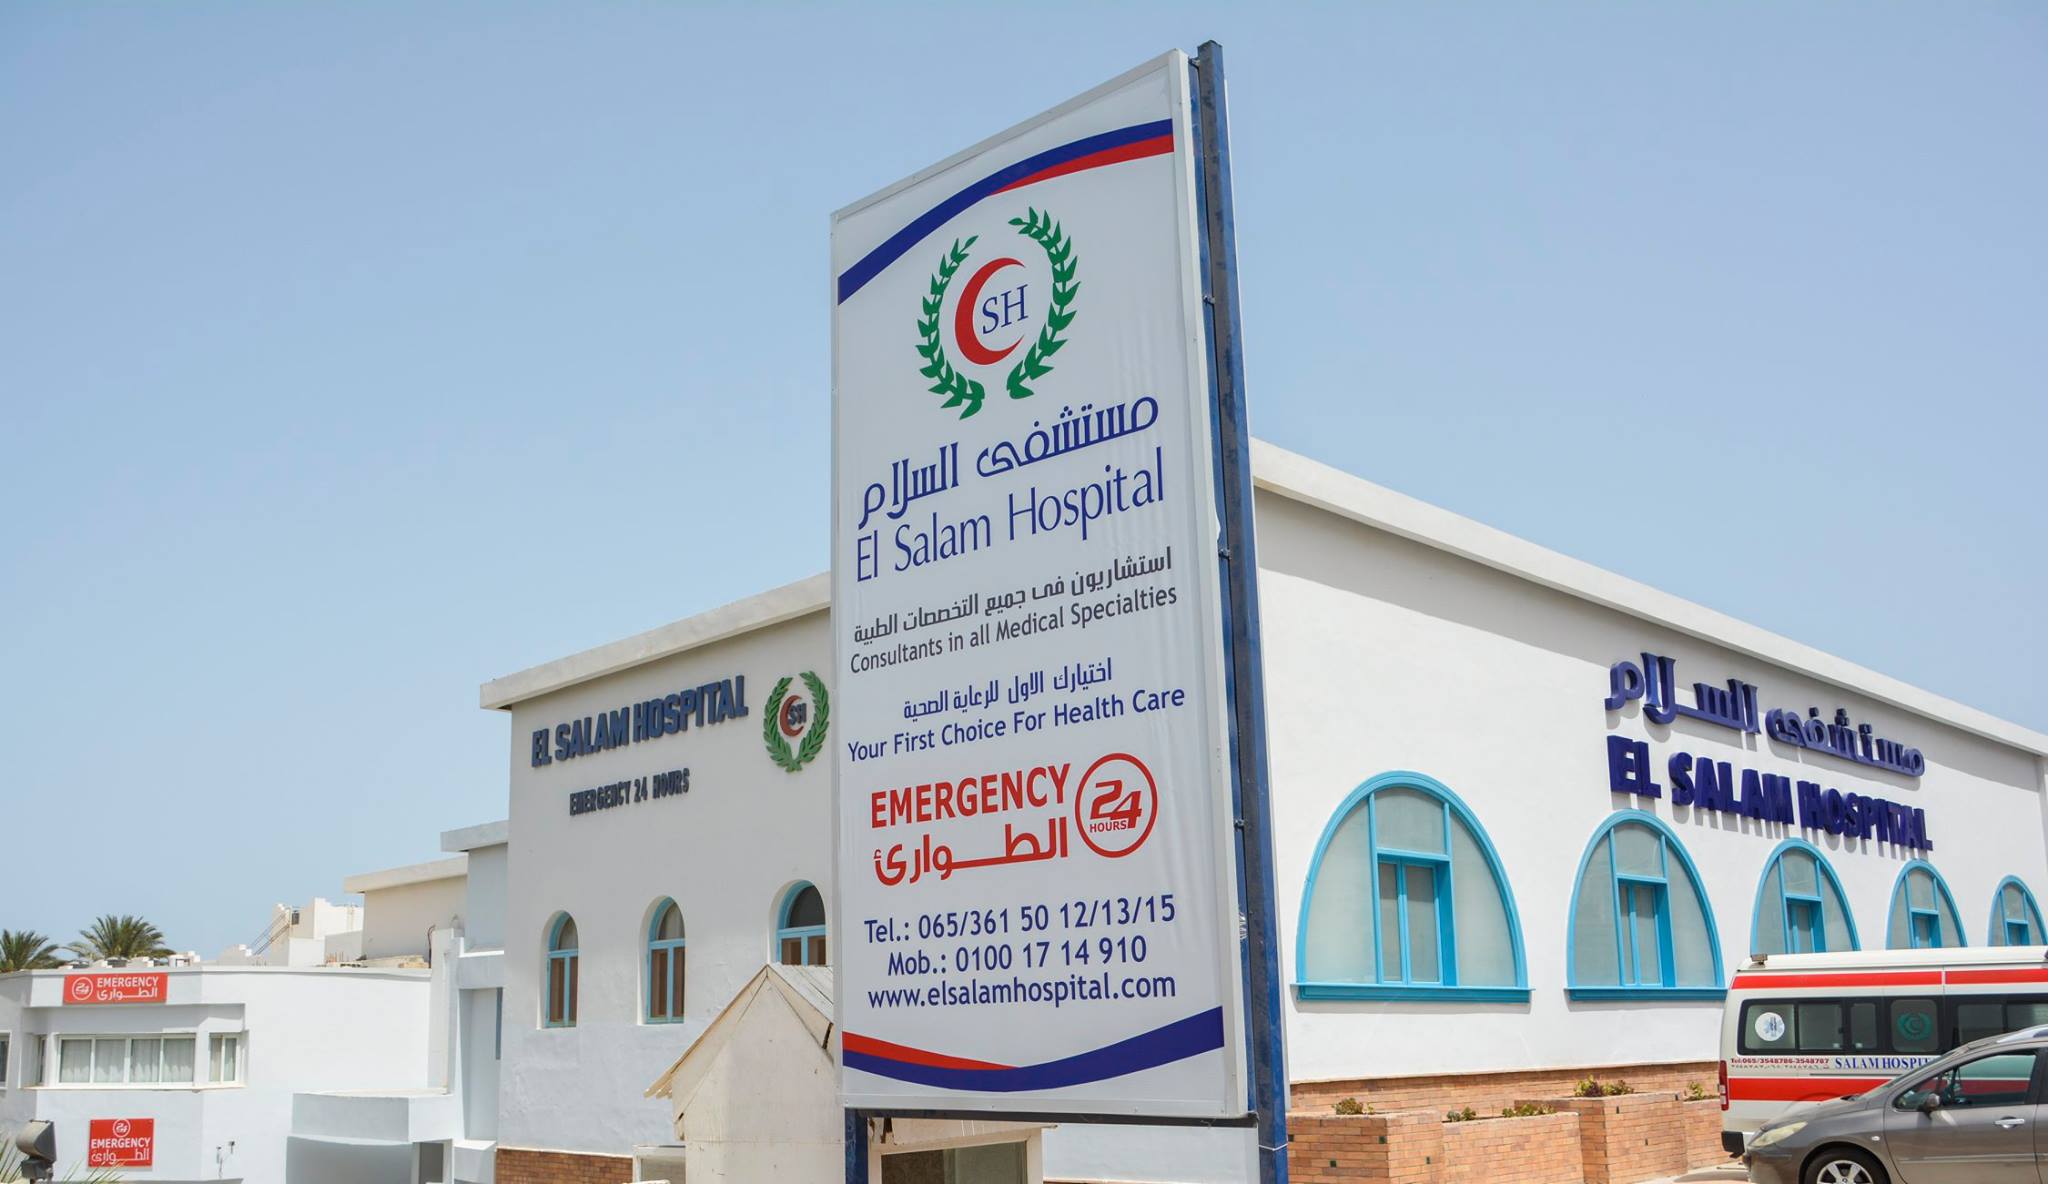 EL Salam Hospital